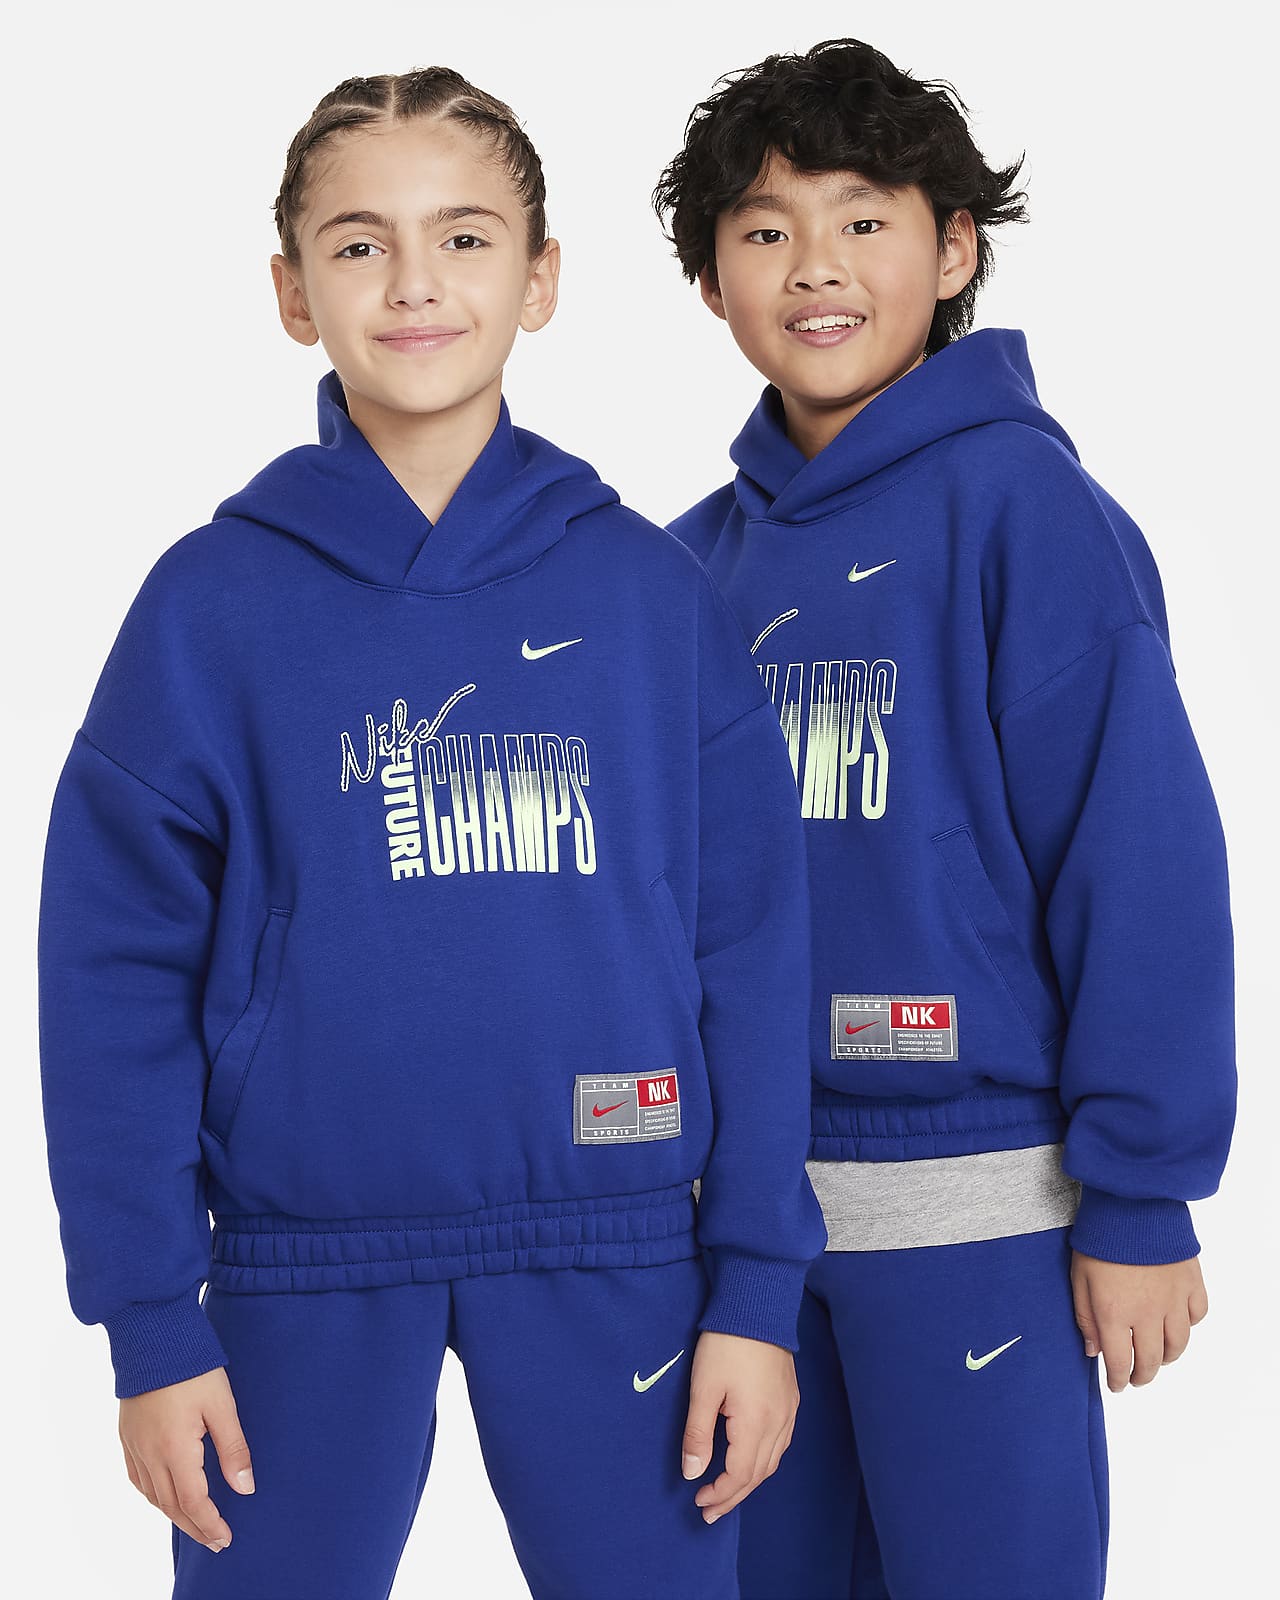 Nike Culture of Basketball Older Kids' Pullover Fleece Hoodie